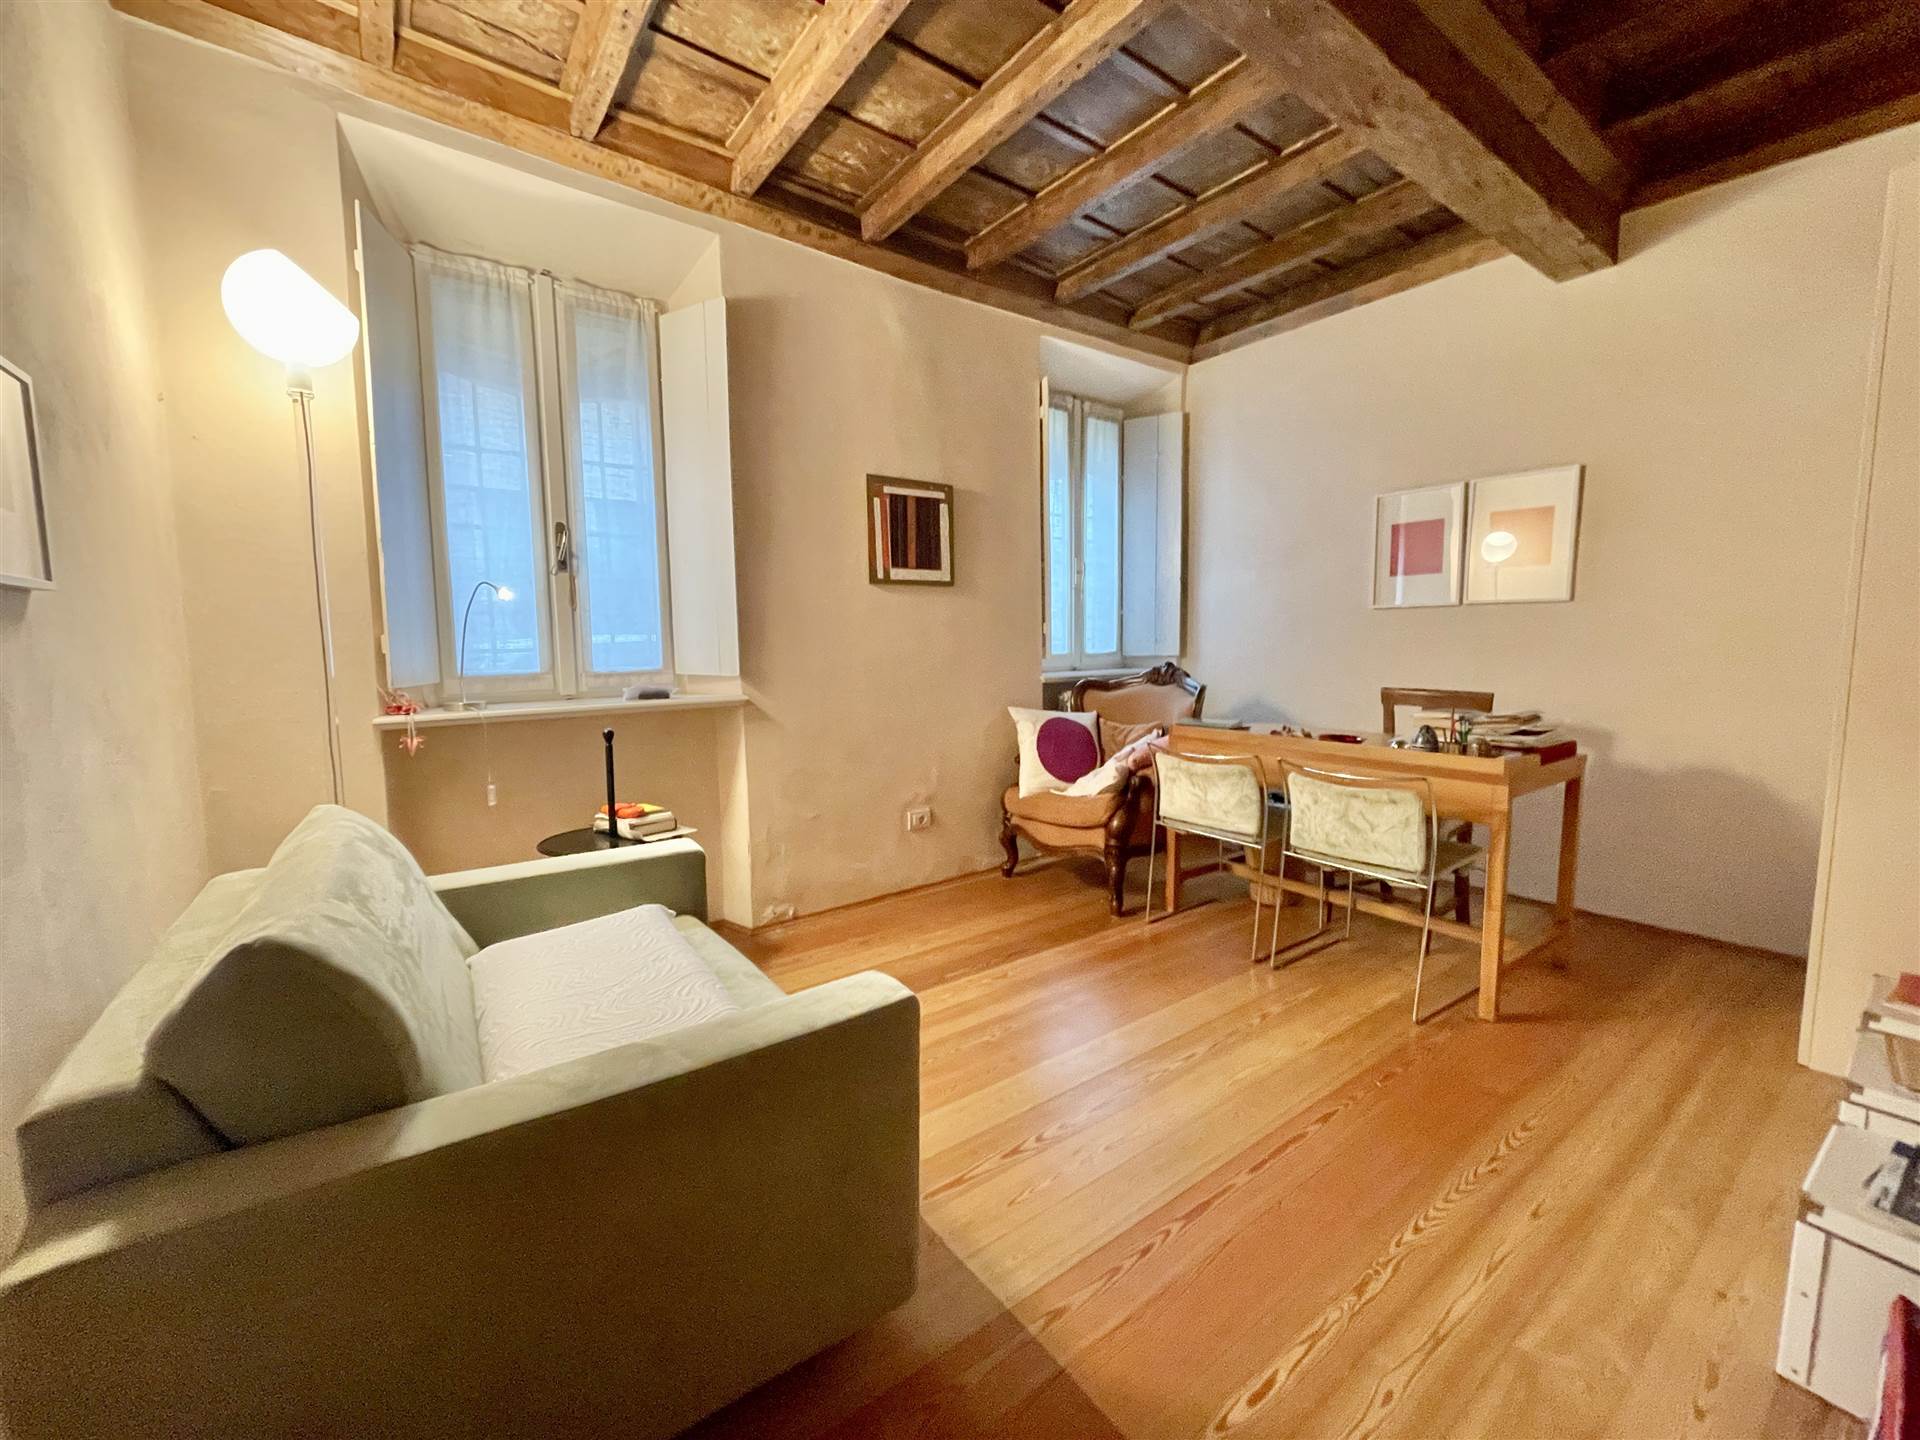 Ufficio / Studio in affitto a Mantova, 1 locali, zona Zona: Viali, prezzo € 380 | CambioCasa.it